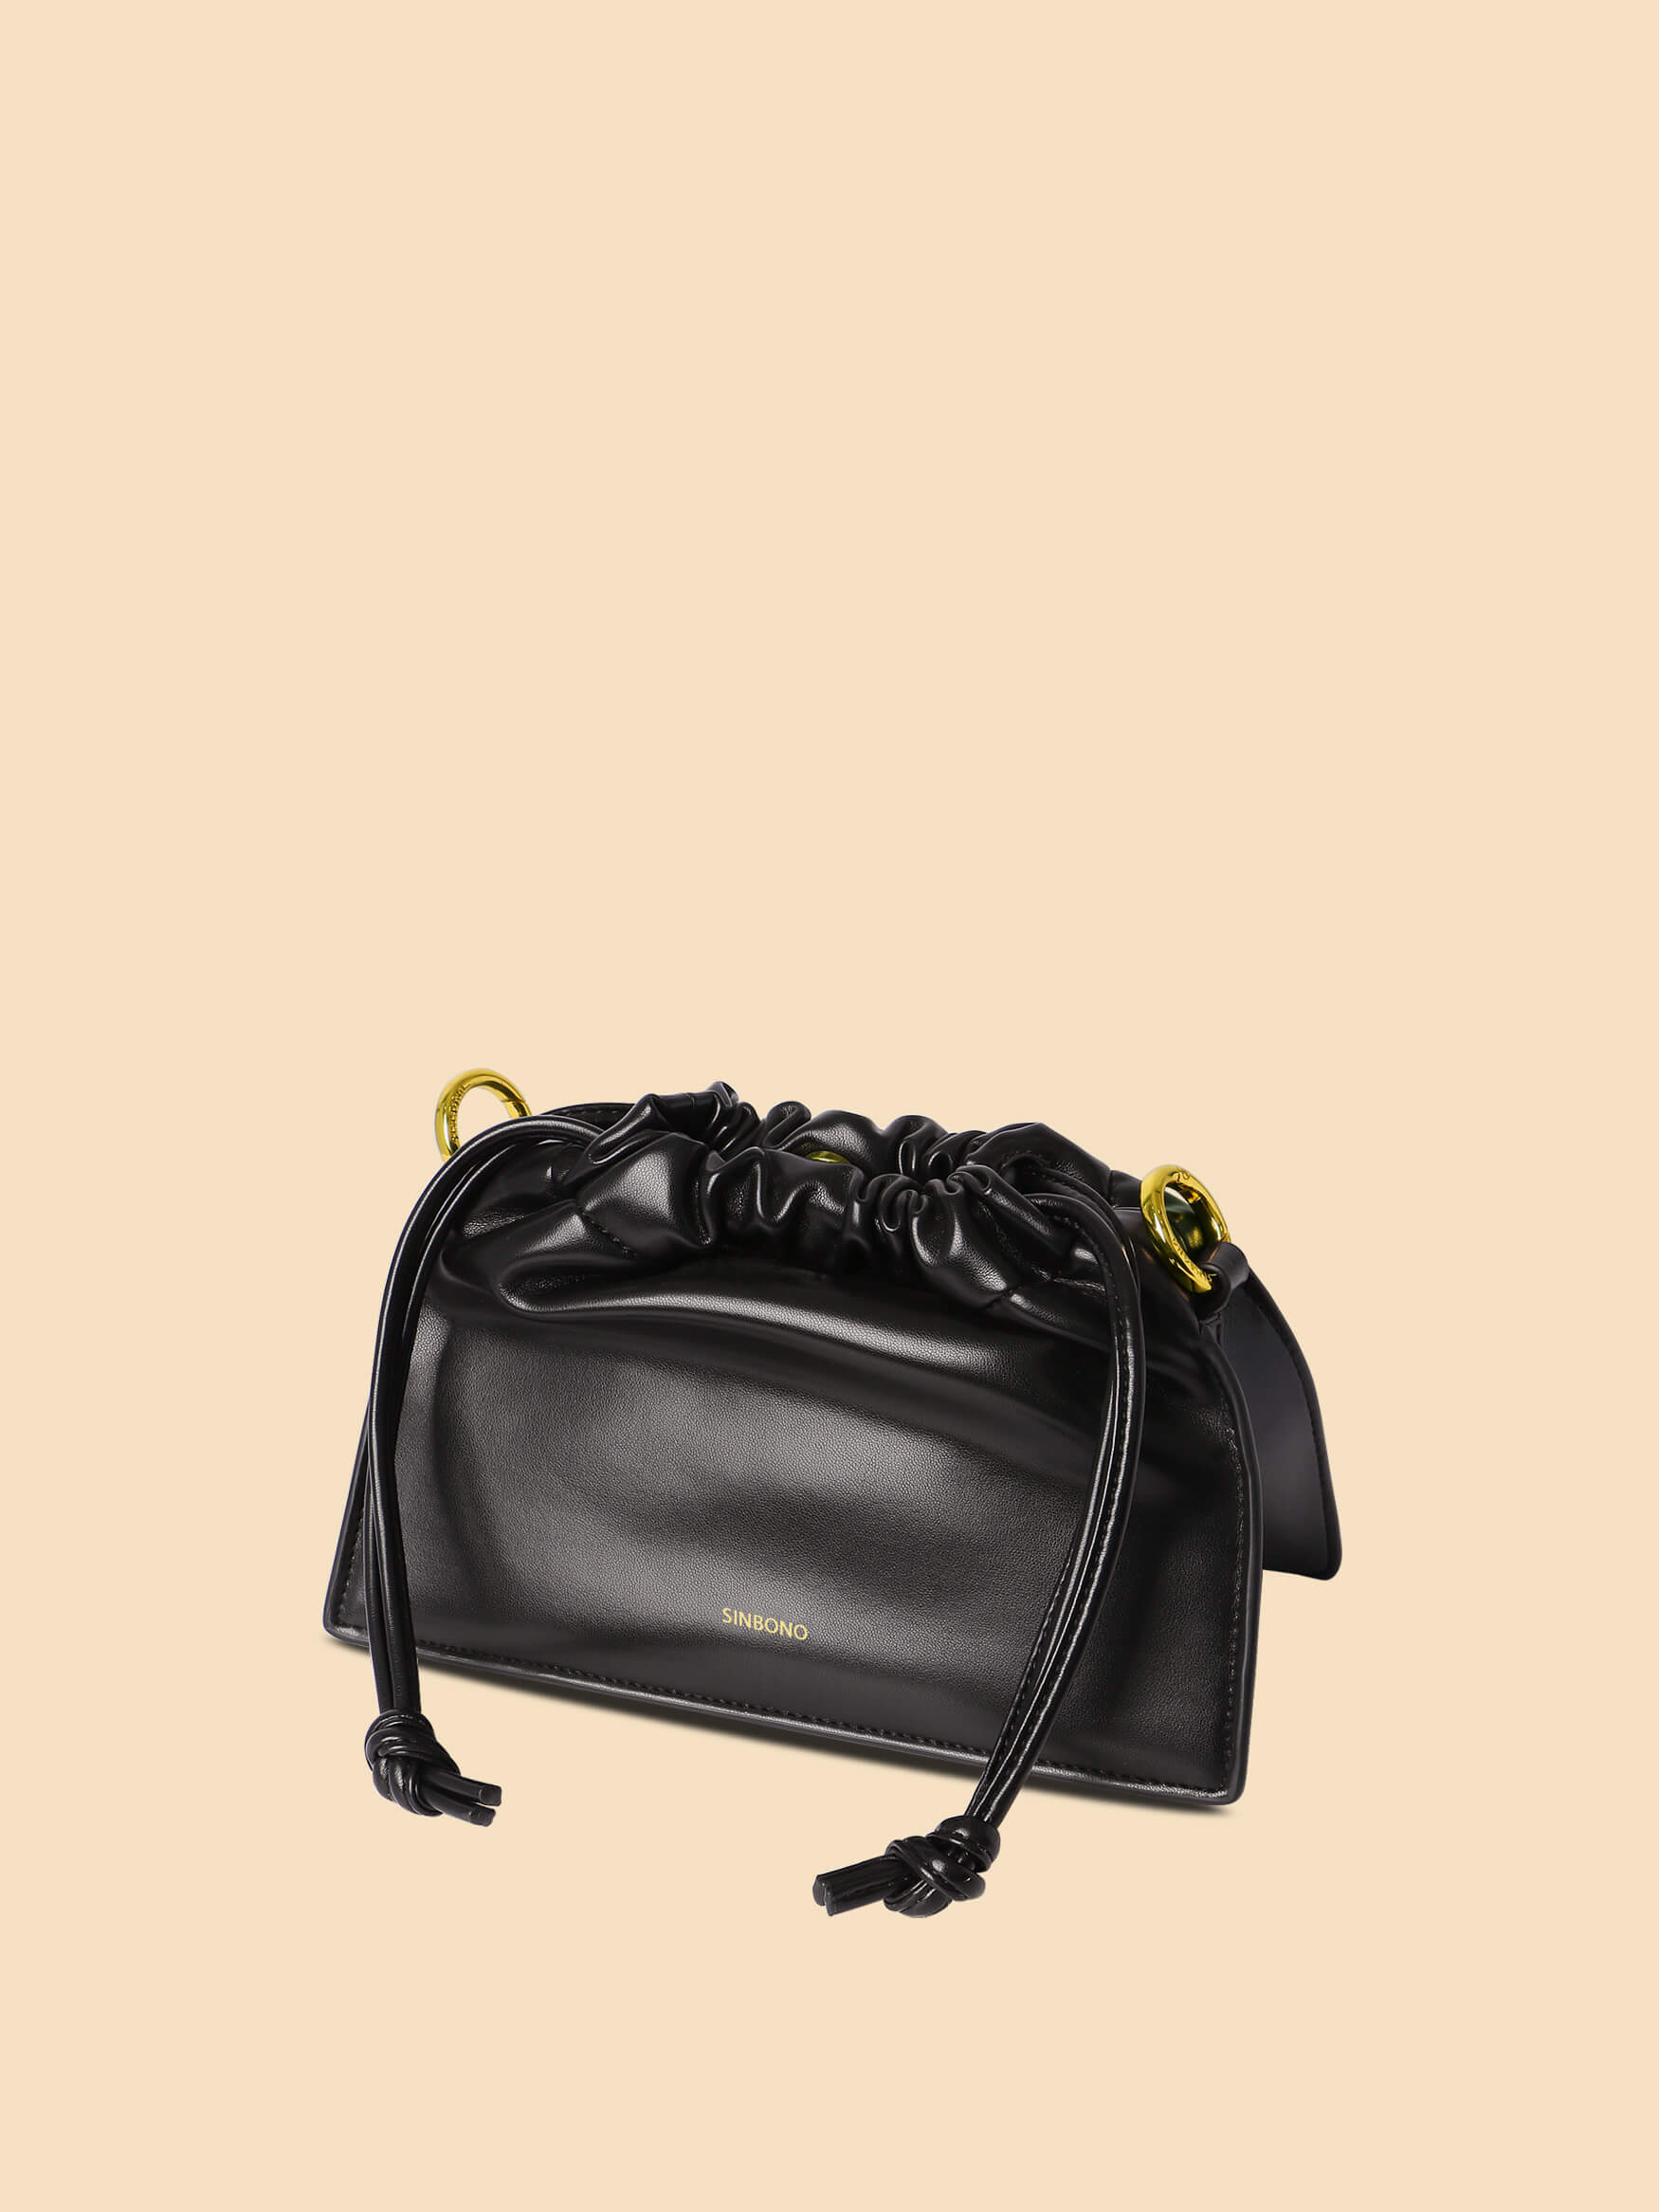 SINBONO Drawstring Handbag Black